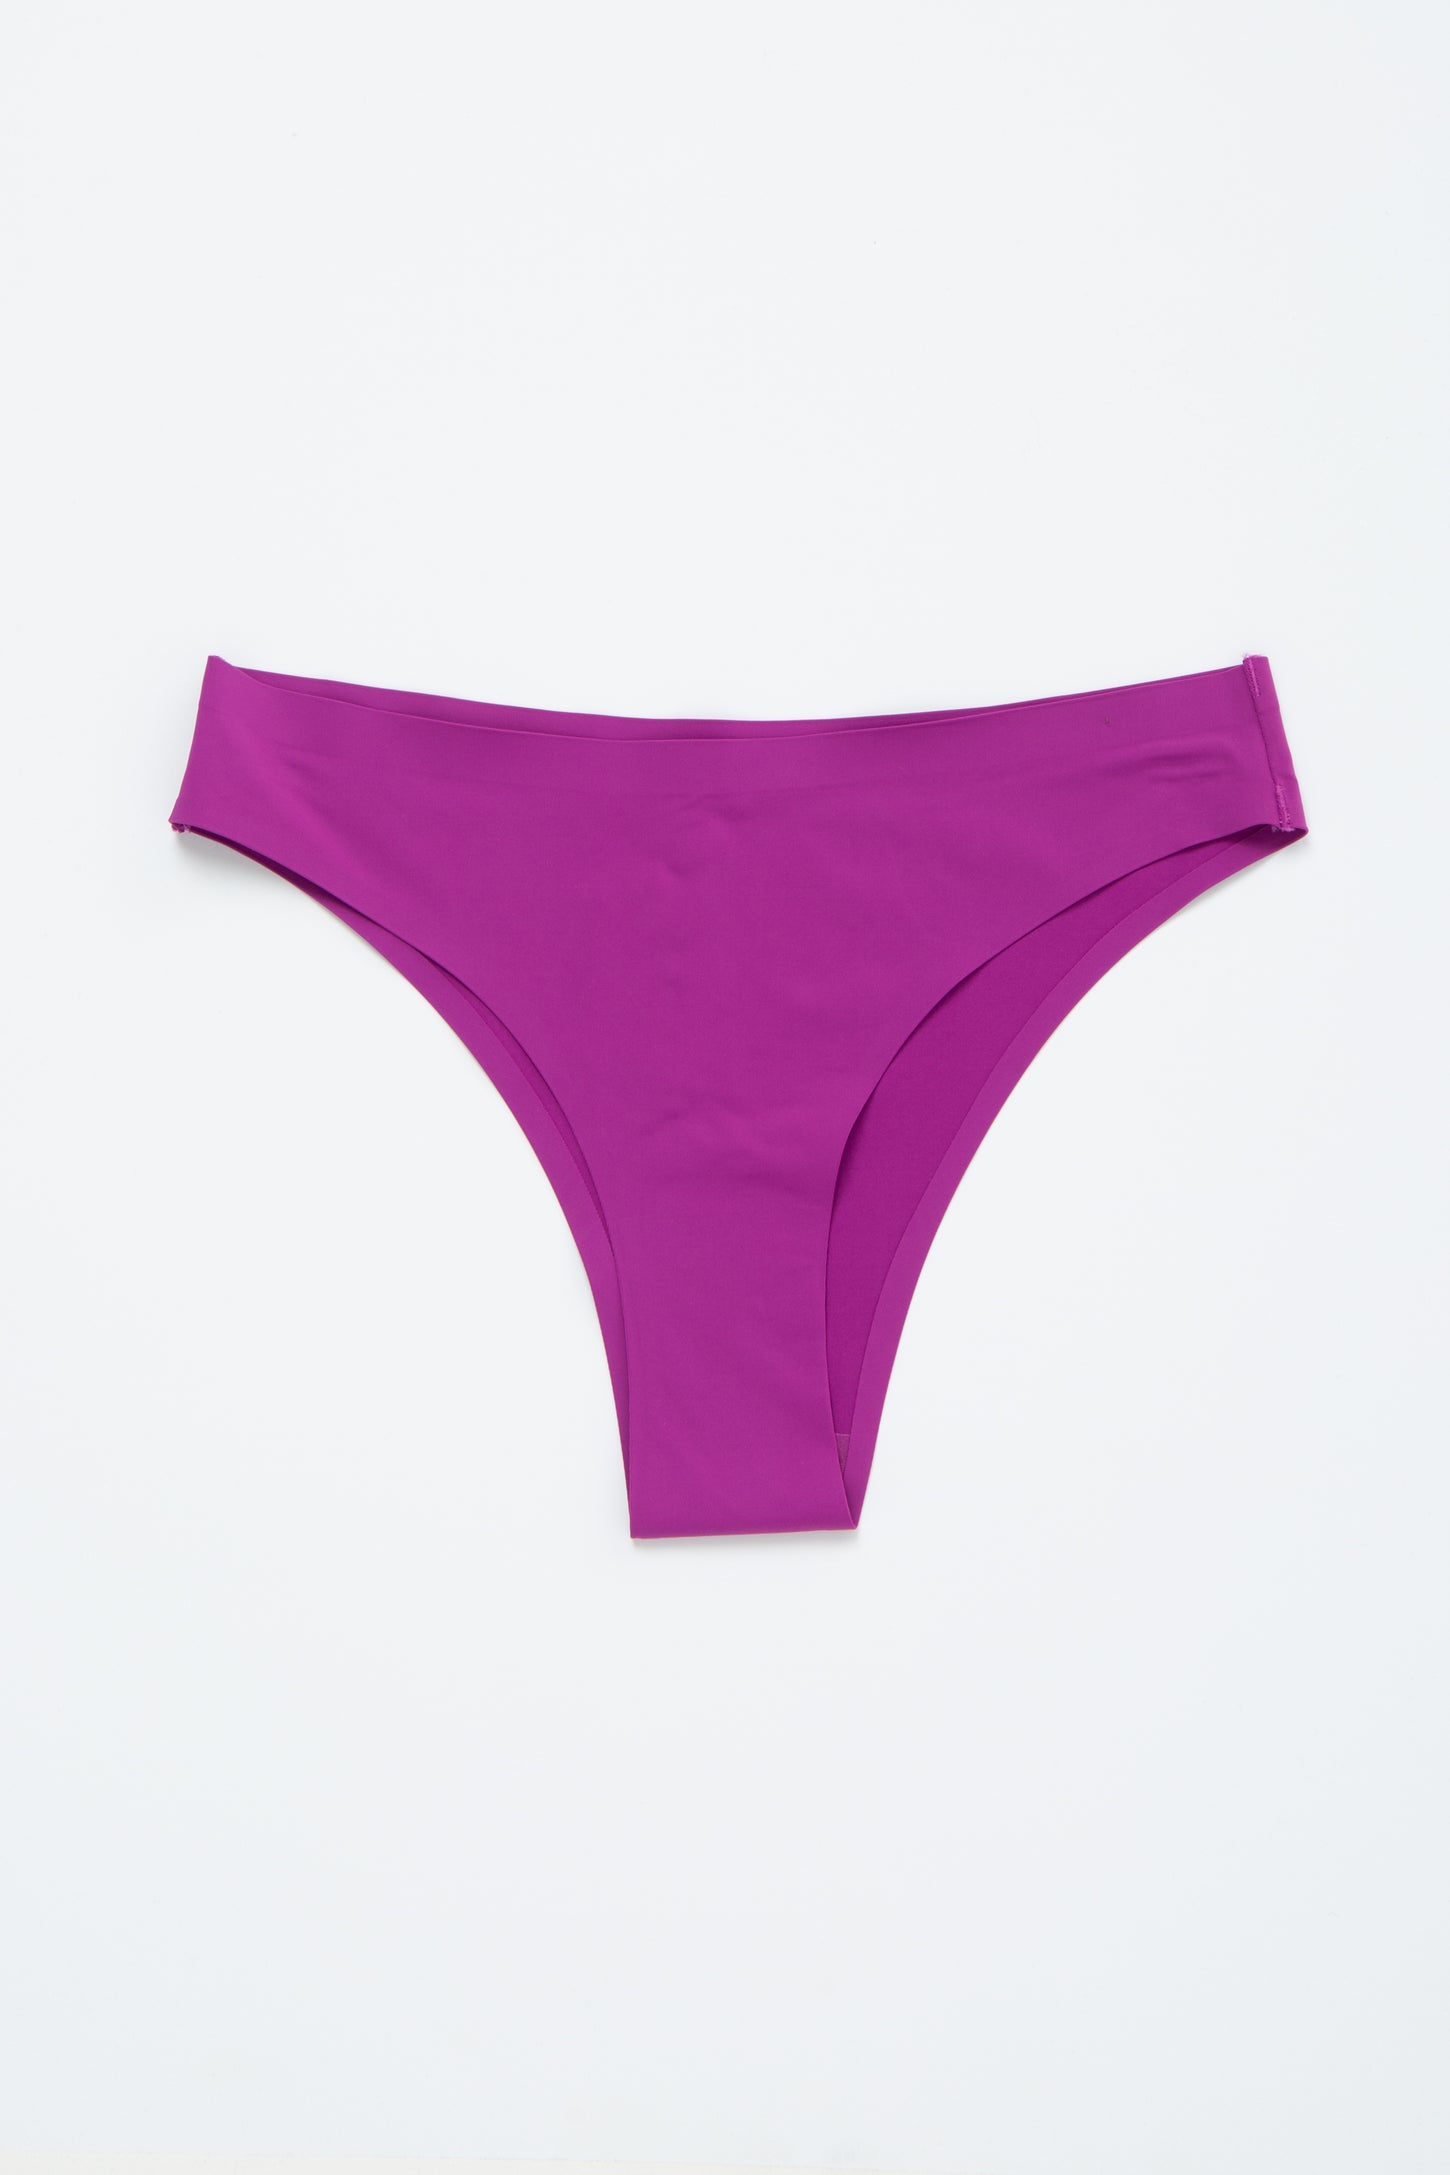 Plum Seamless Underwear– PinkBlush